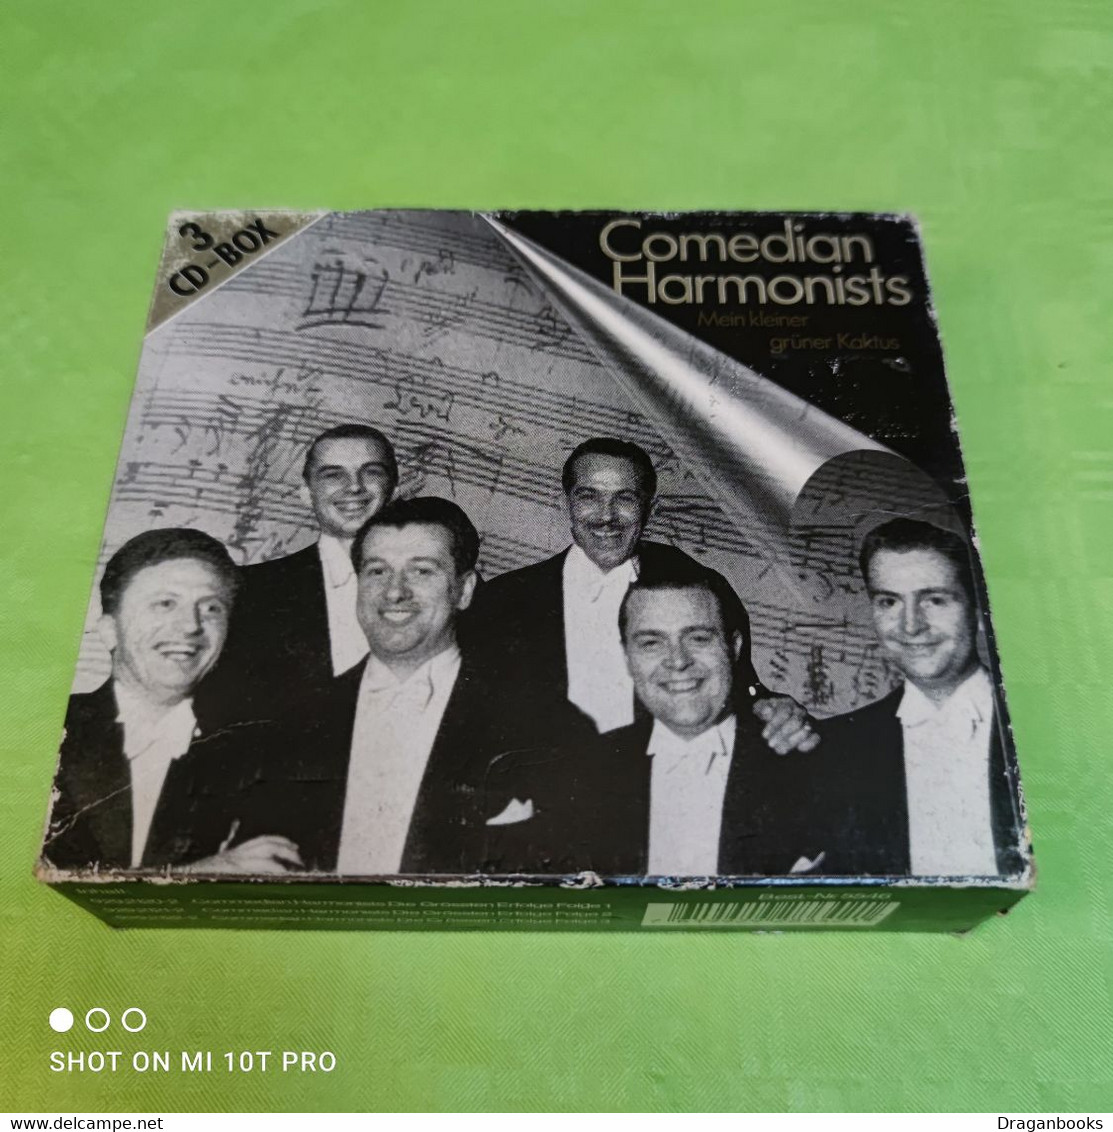 Comedian Marmonists - 3 CD Box - Sonstige - Deutsche Musik